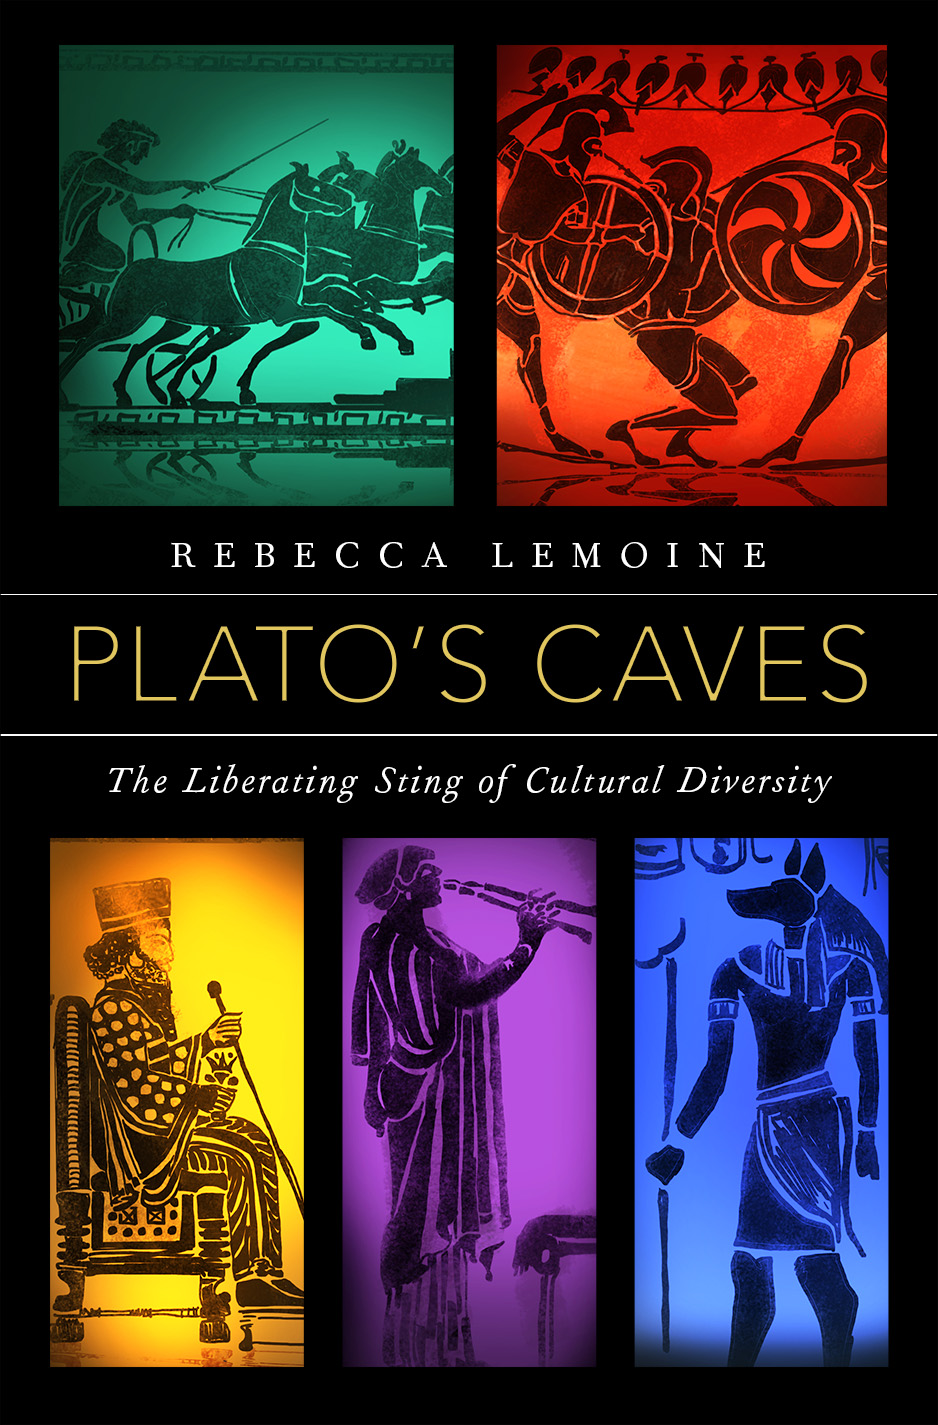 Plato's Cave (book) Rebecca Lemoine (author)